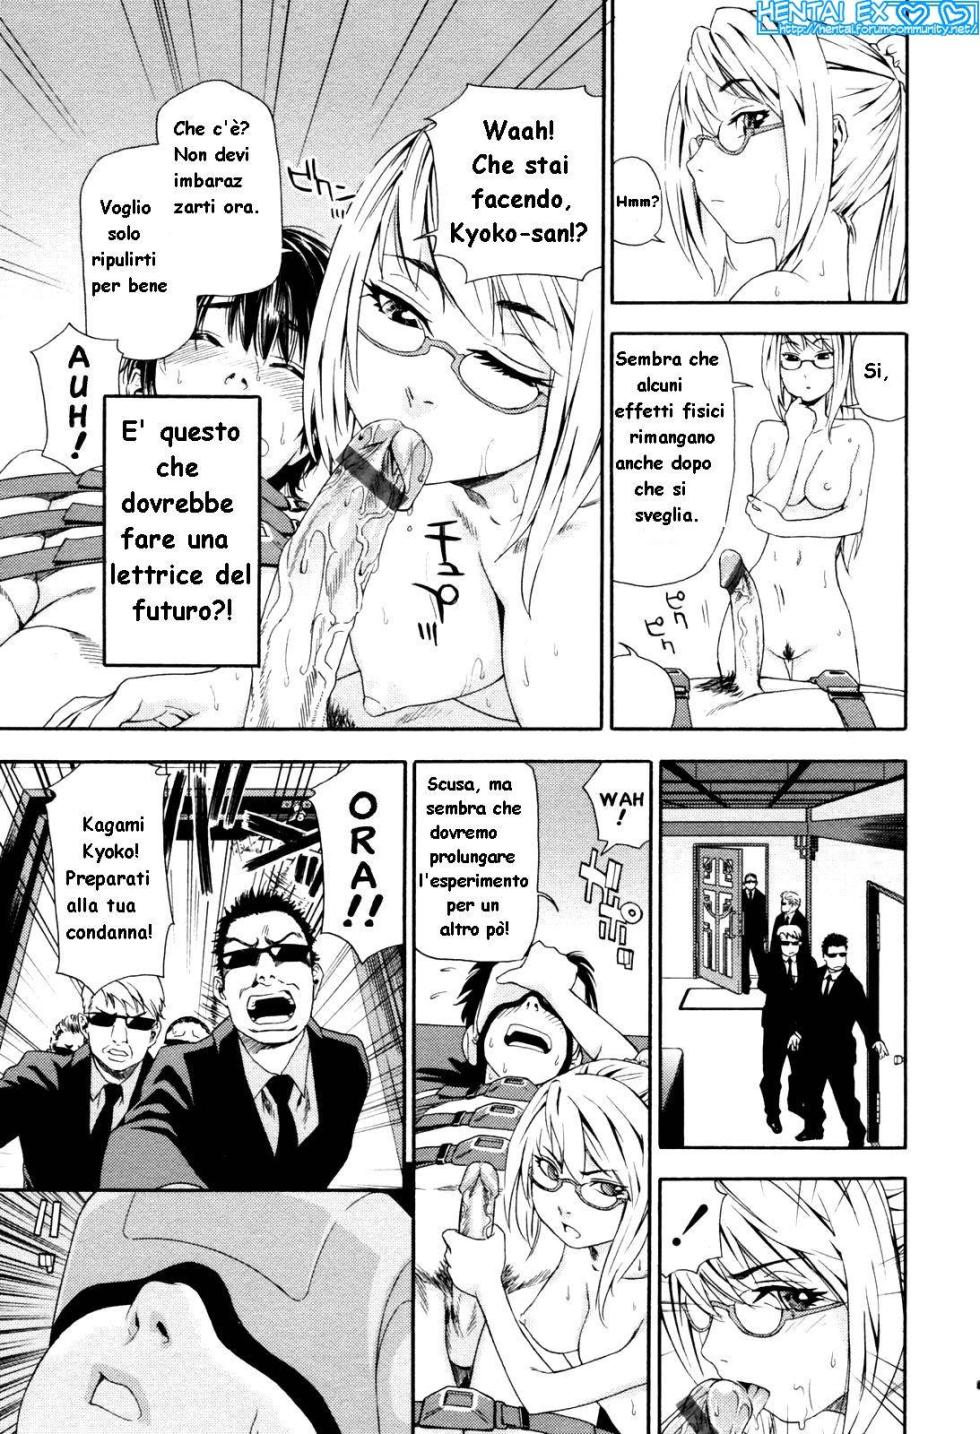 [Yamatogawa] Witchcraft [Hentai EX] (Italian) - Page 35